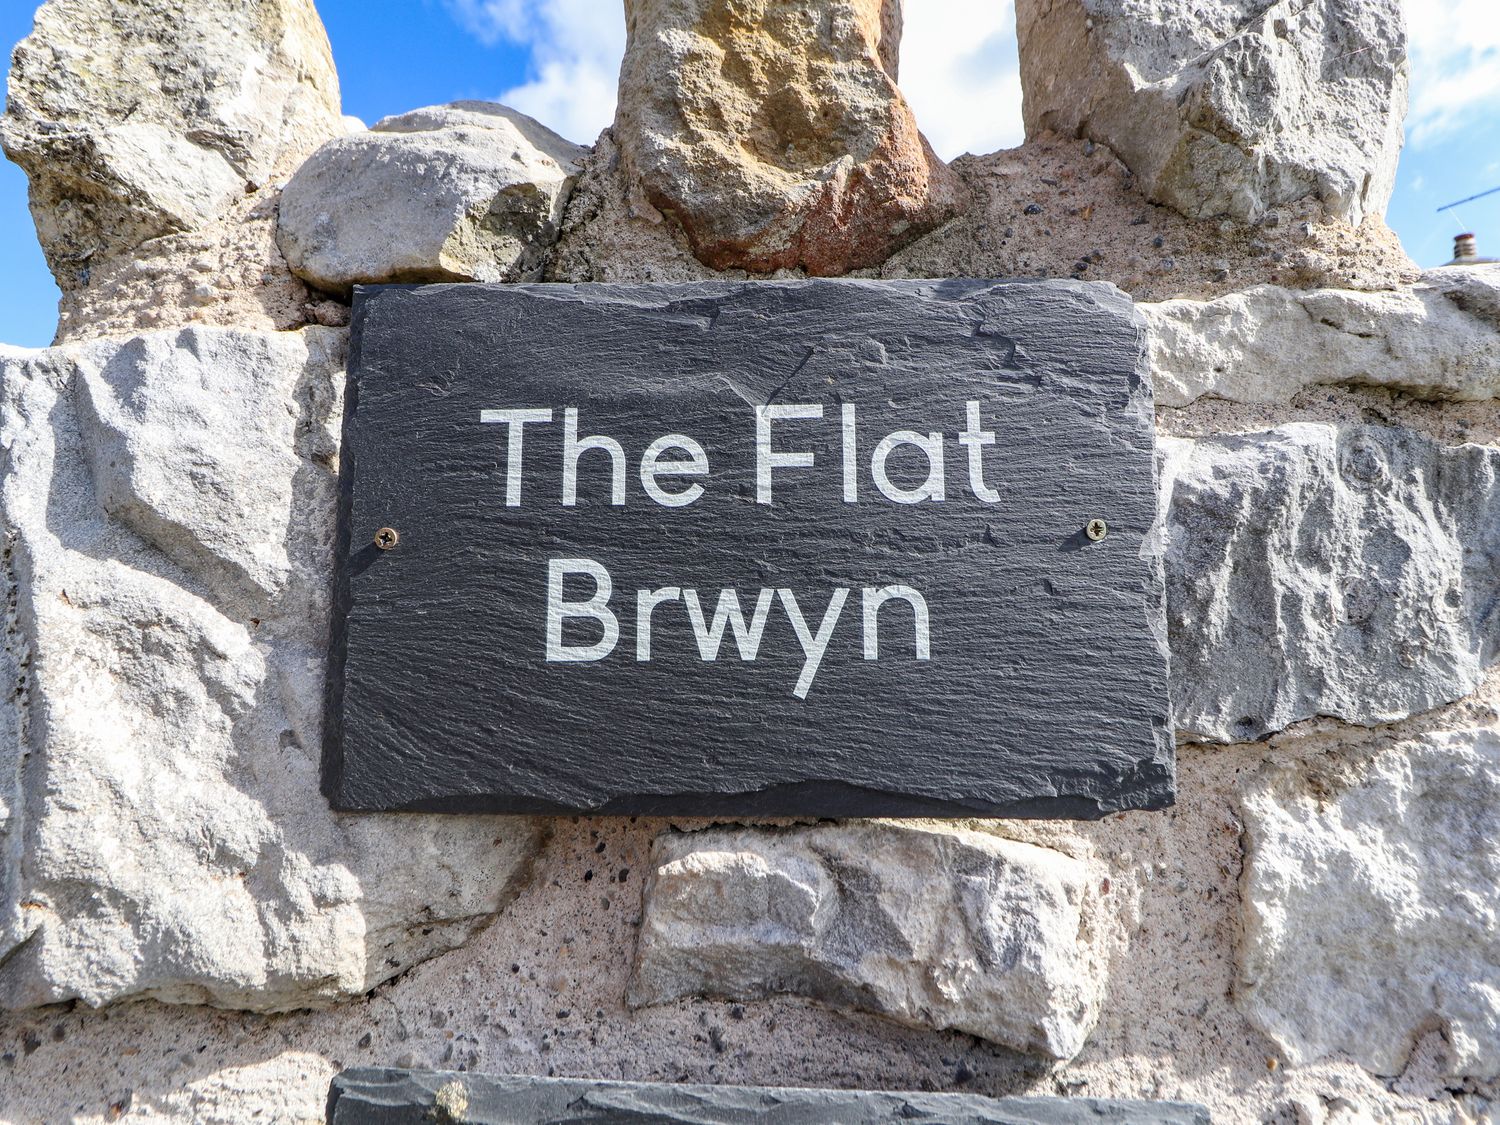 The Flat At Brwyn, Brynford